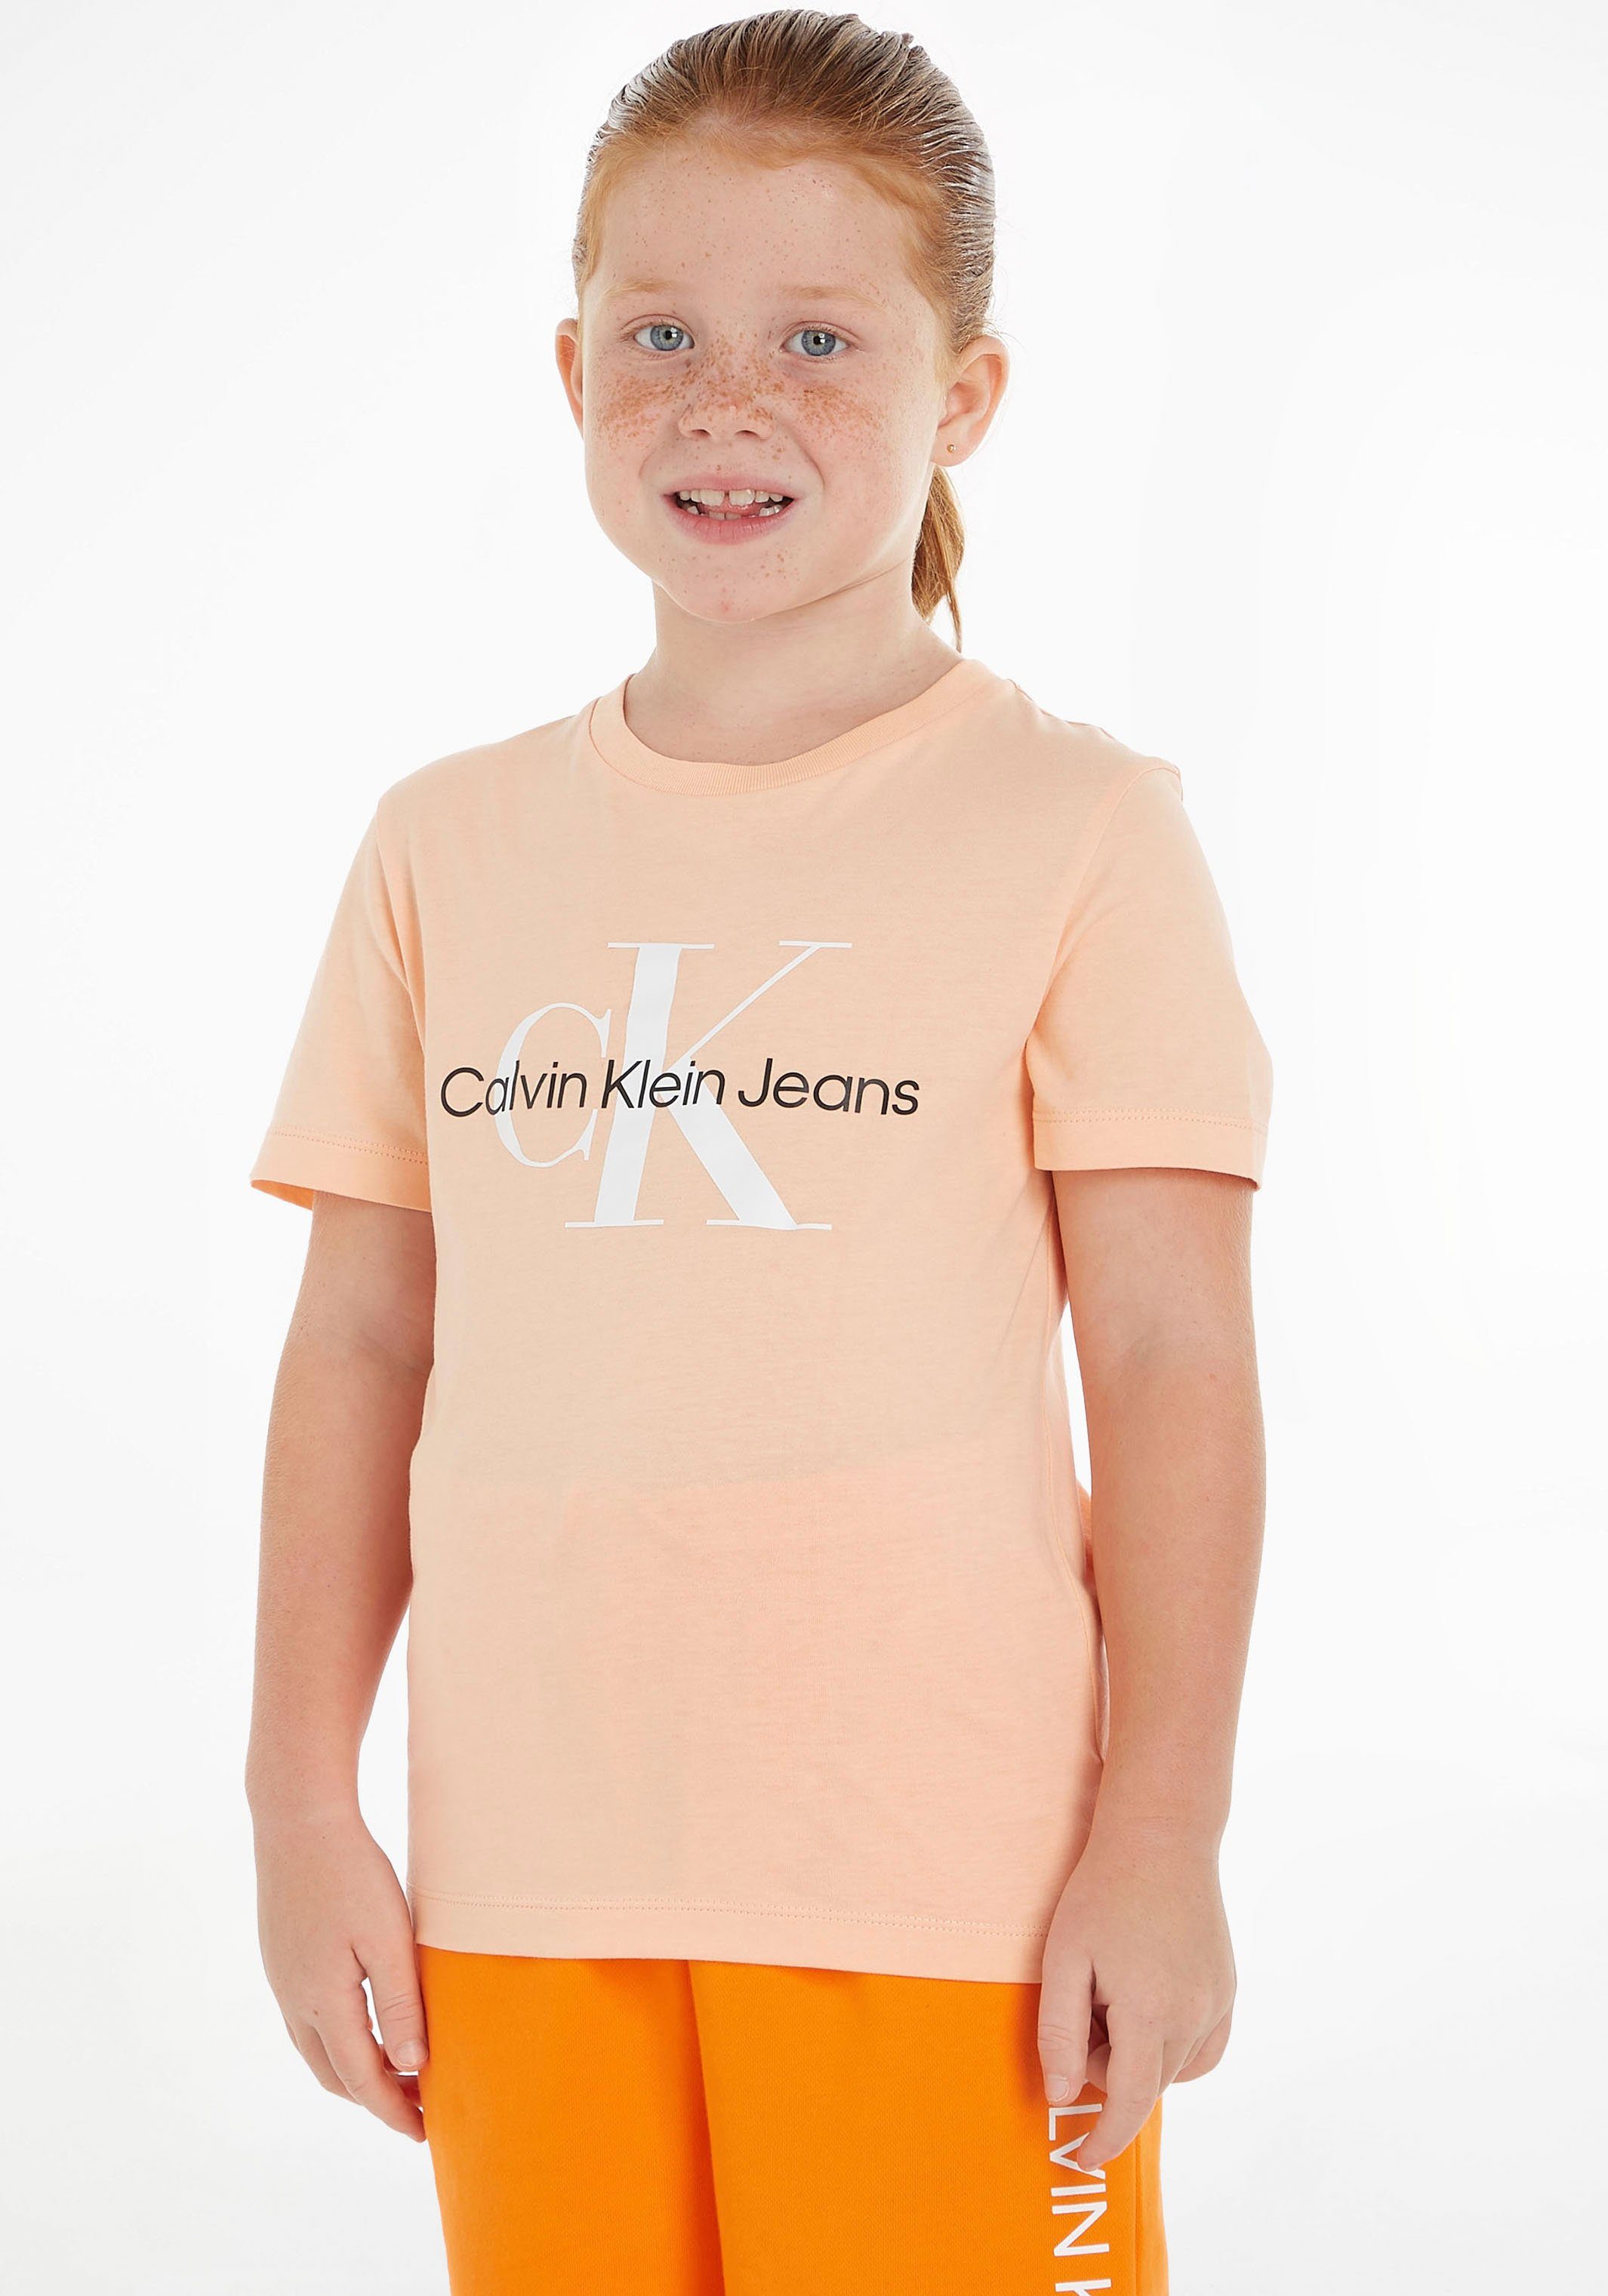 Calvin Klein Jeans T-Shirt MONOGRAM Junior LOGO und Mädchen MiniMe,für Kinder Kids hellorange Jungen T-SHIRT